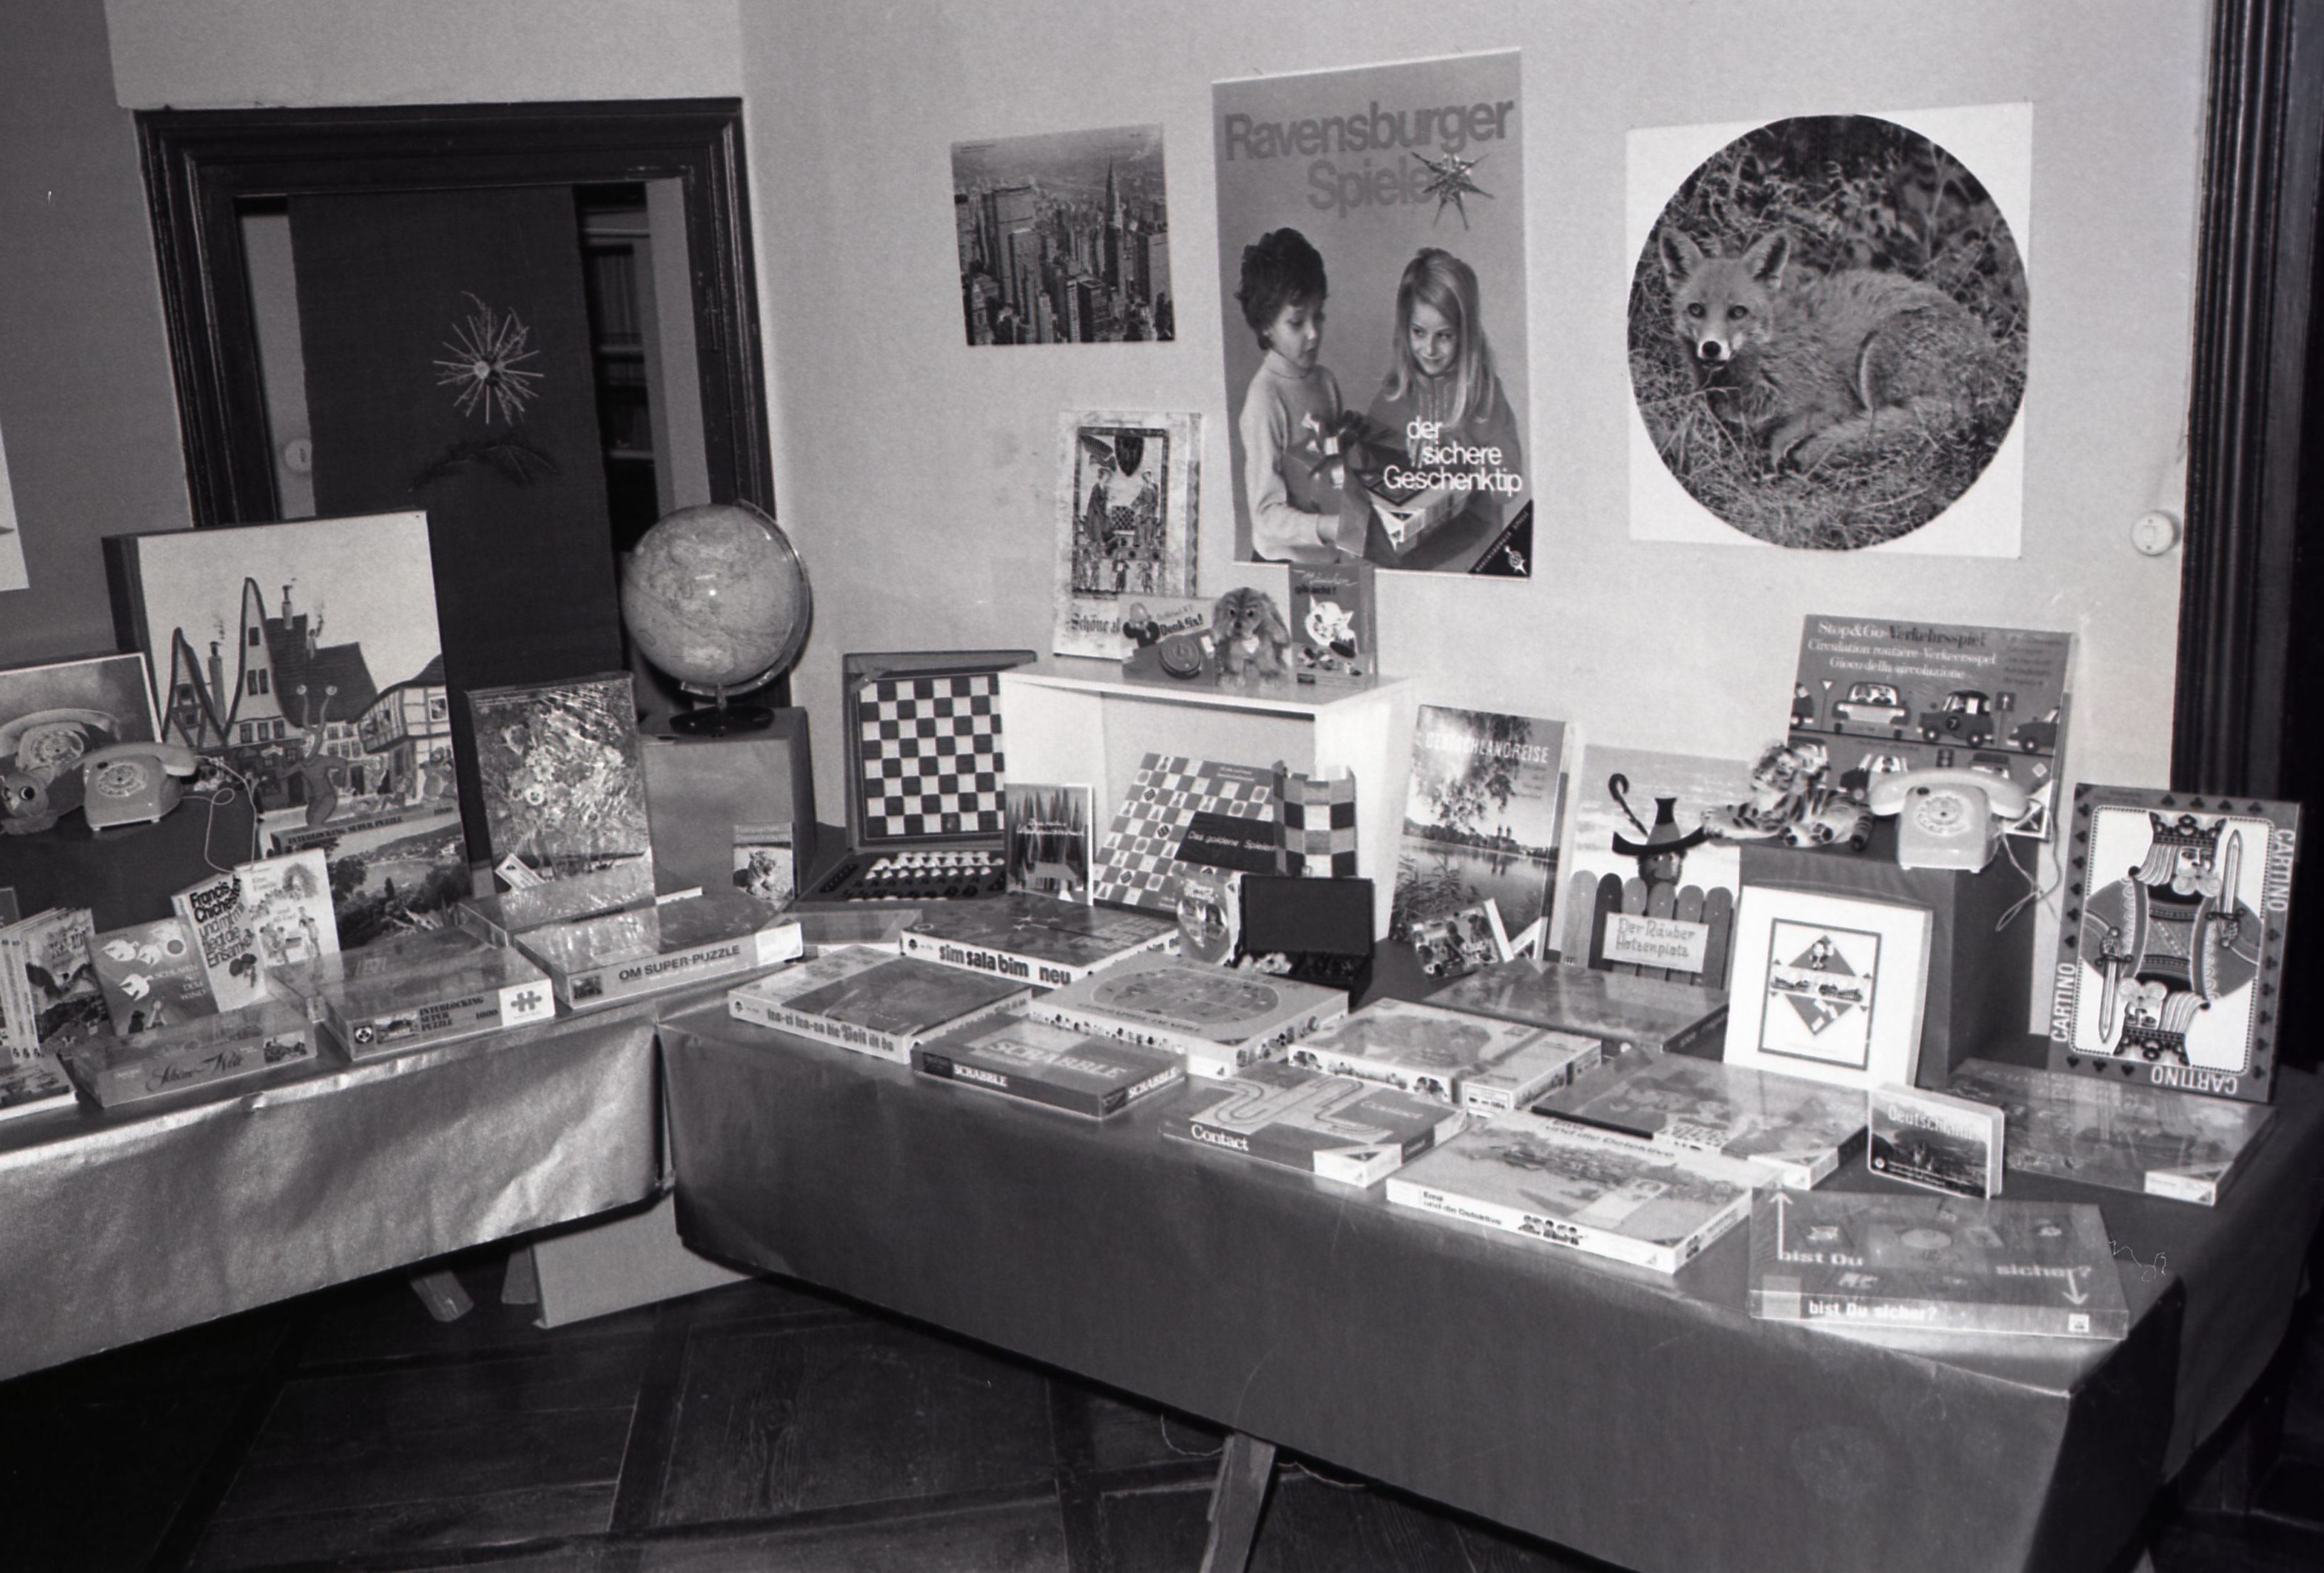 Spielzeugausstellung am 27.11.1971 im Haus Löwenberg